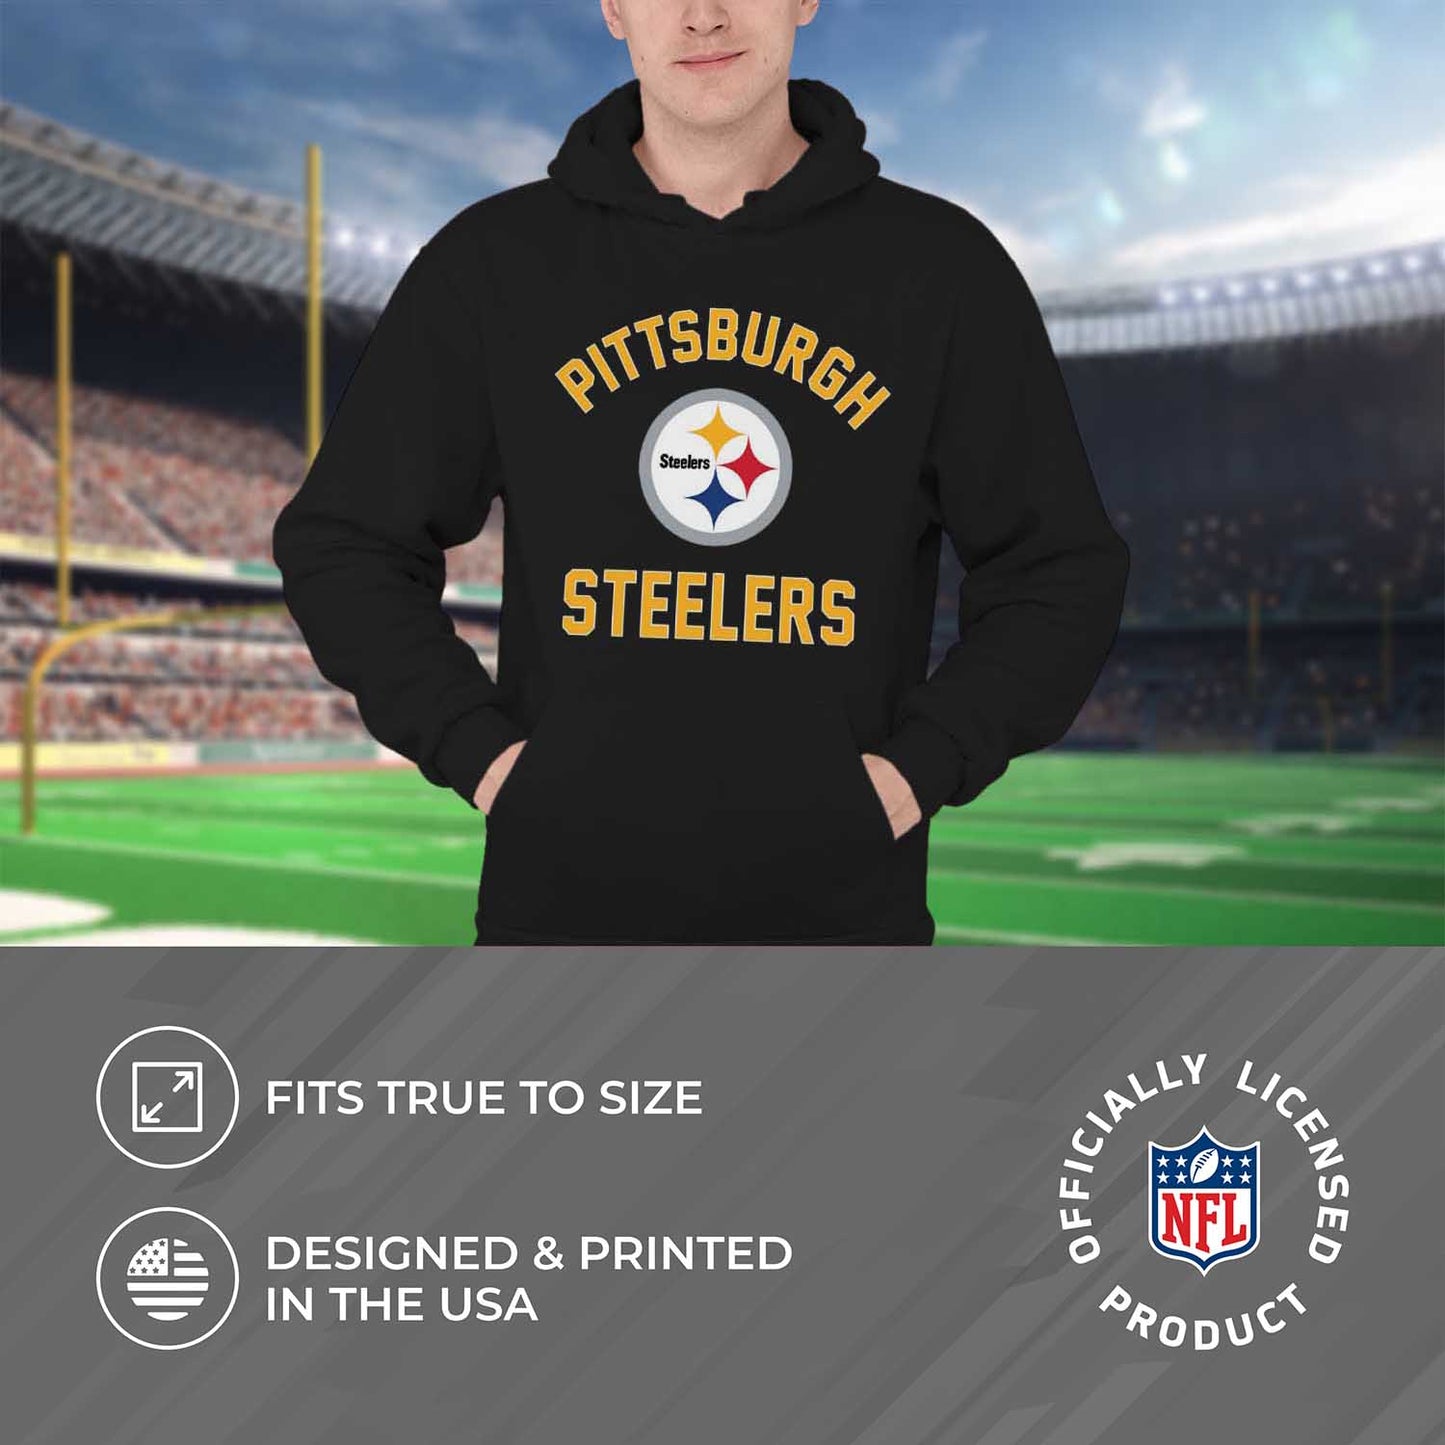 Pittsburgh Steelers NFL Adult Gameday Hooded Sweatshirt - Black